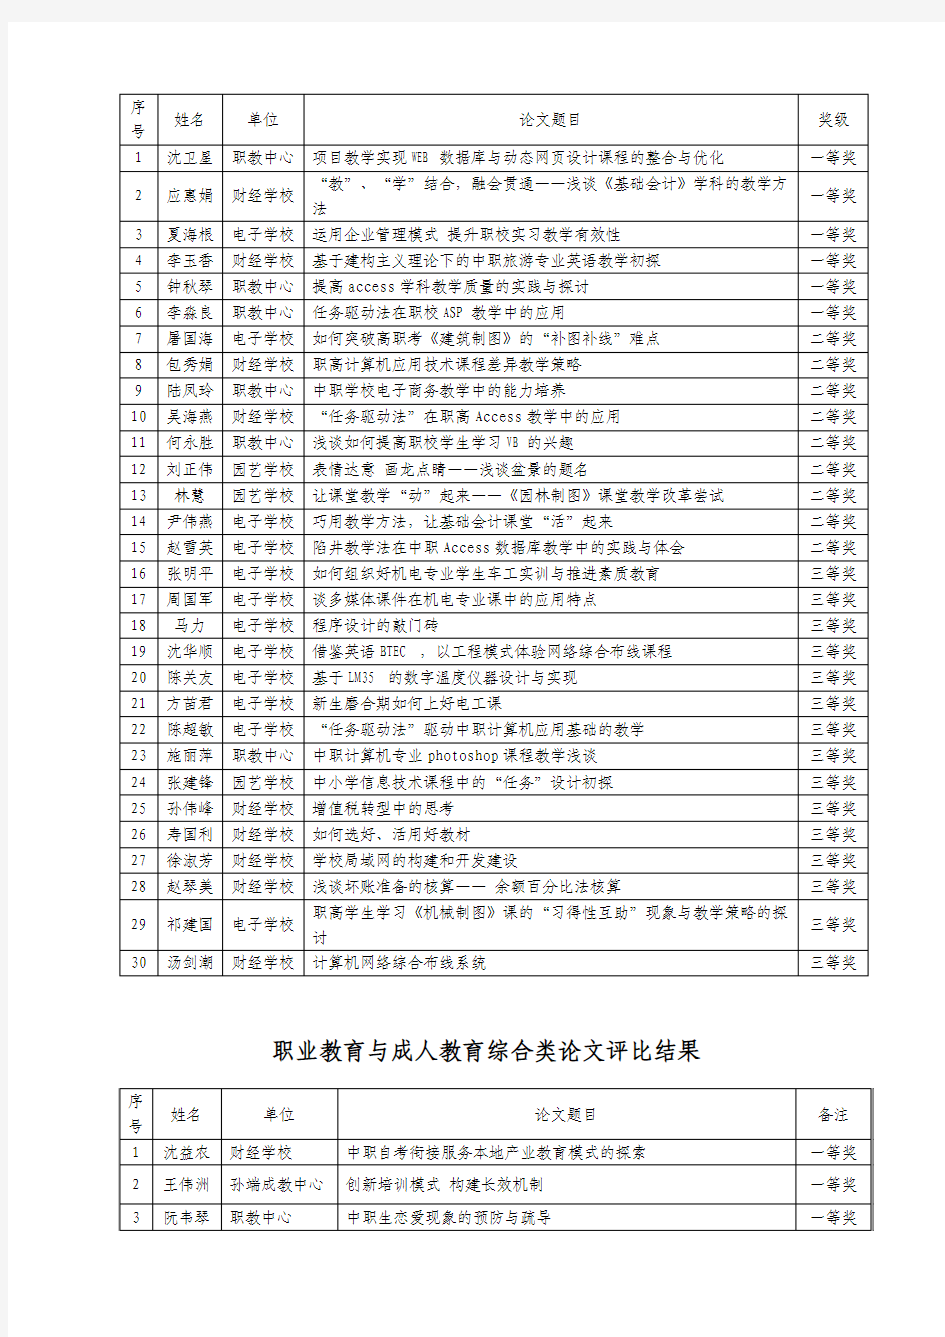 2010年绍兴县职业教育与成人教育教学论文评比结果